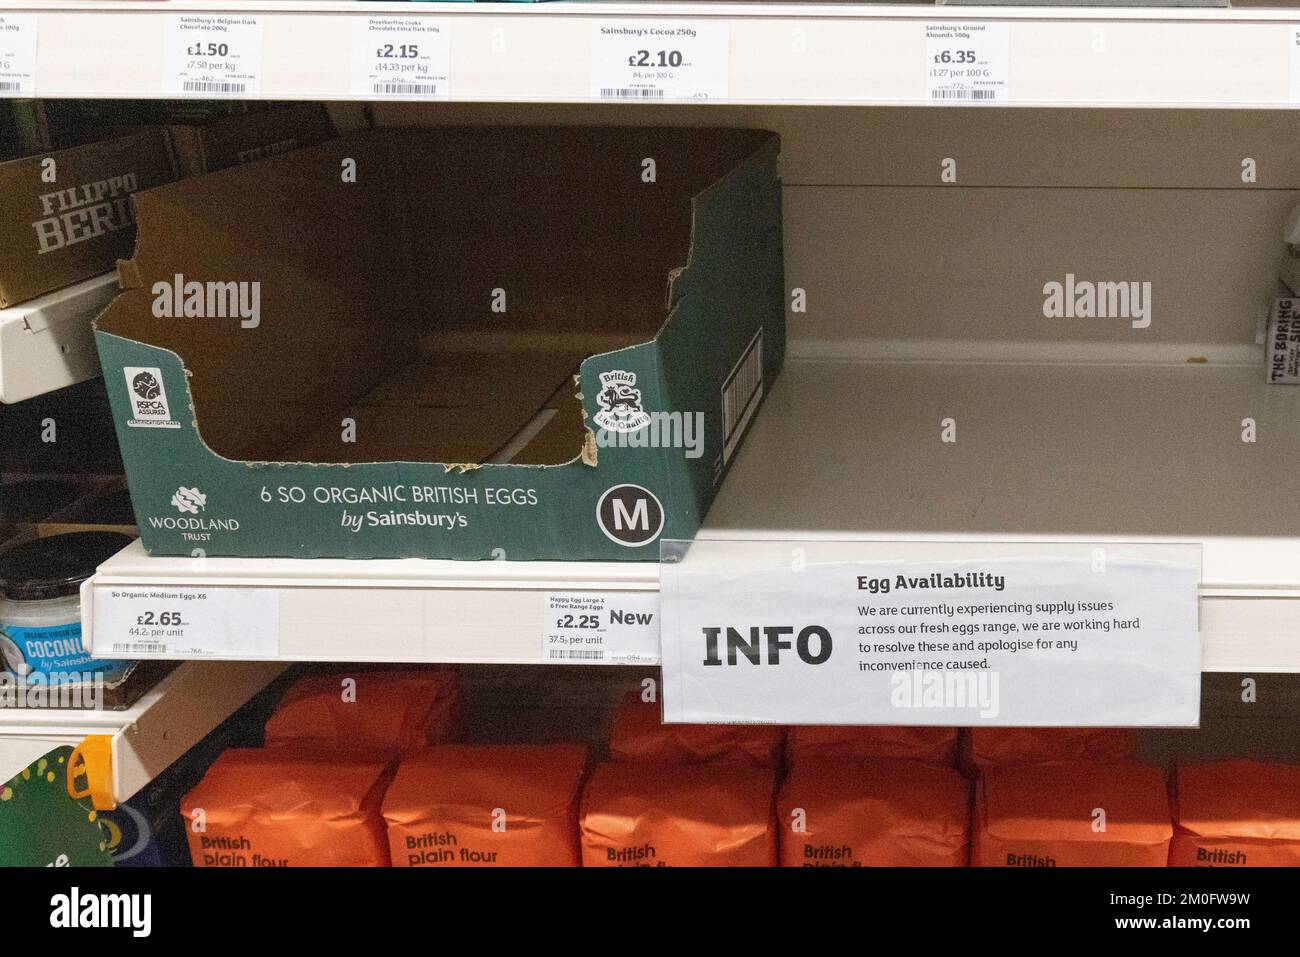 Sainsbury’s sembra aver vissuto una carenza di uova in tutta la catena. Una filiale di Leicester Square ha esaurito la fornitura di uova. Immagine scattata il 1st dicembre 2022 Foto Stock